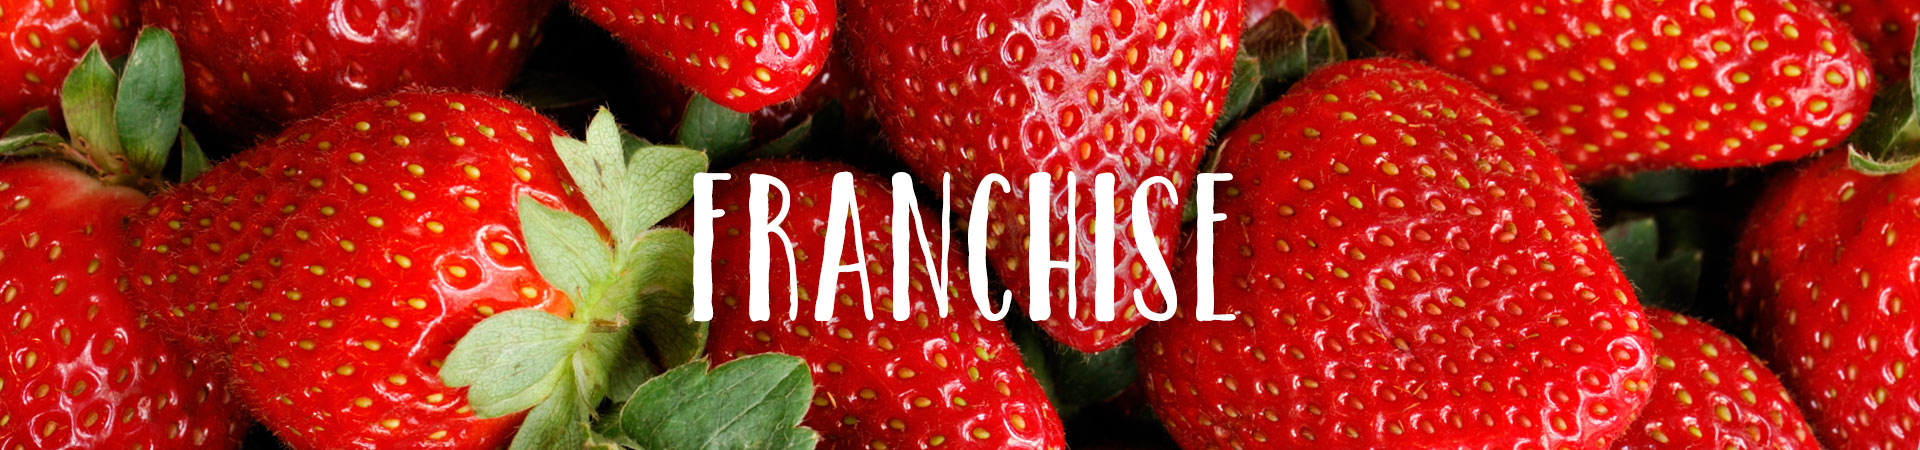 Franchise strawberry image - Masthead